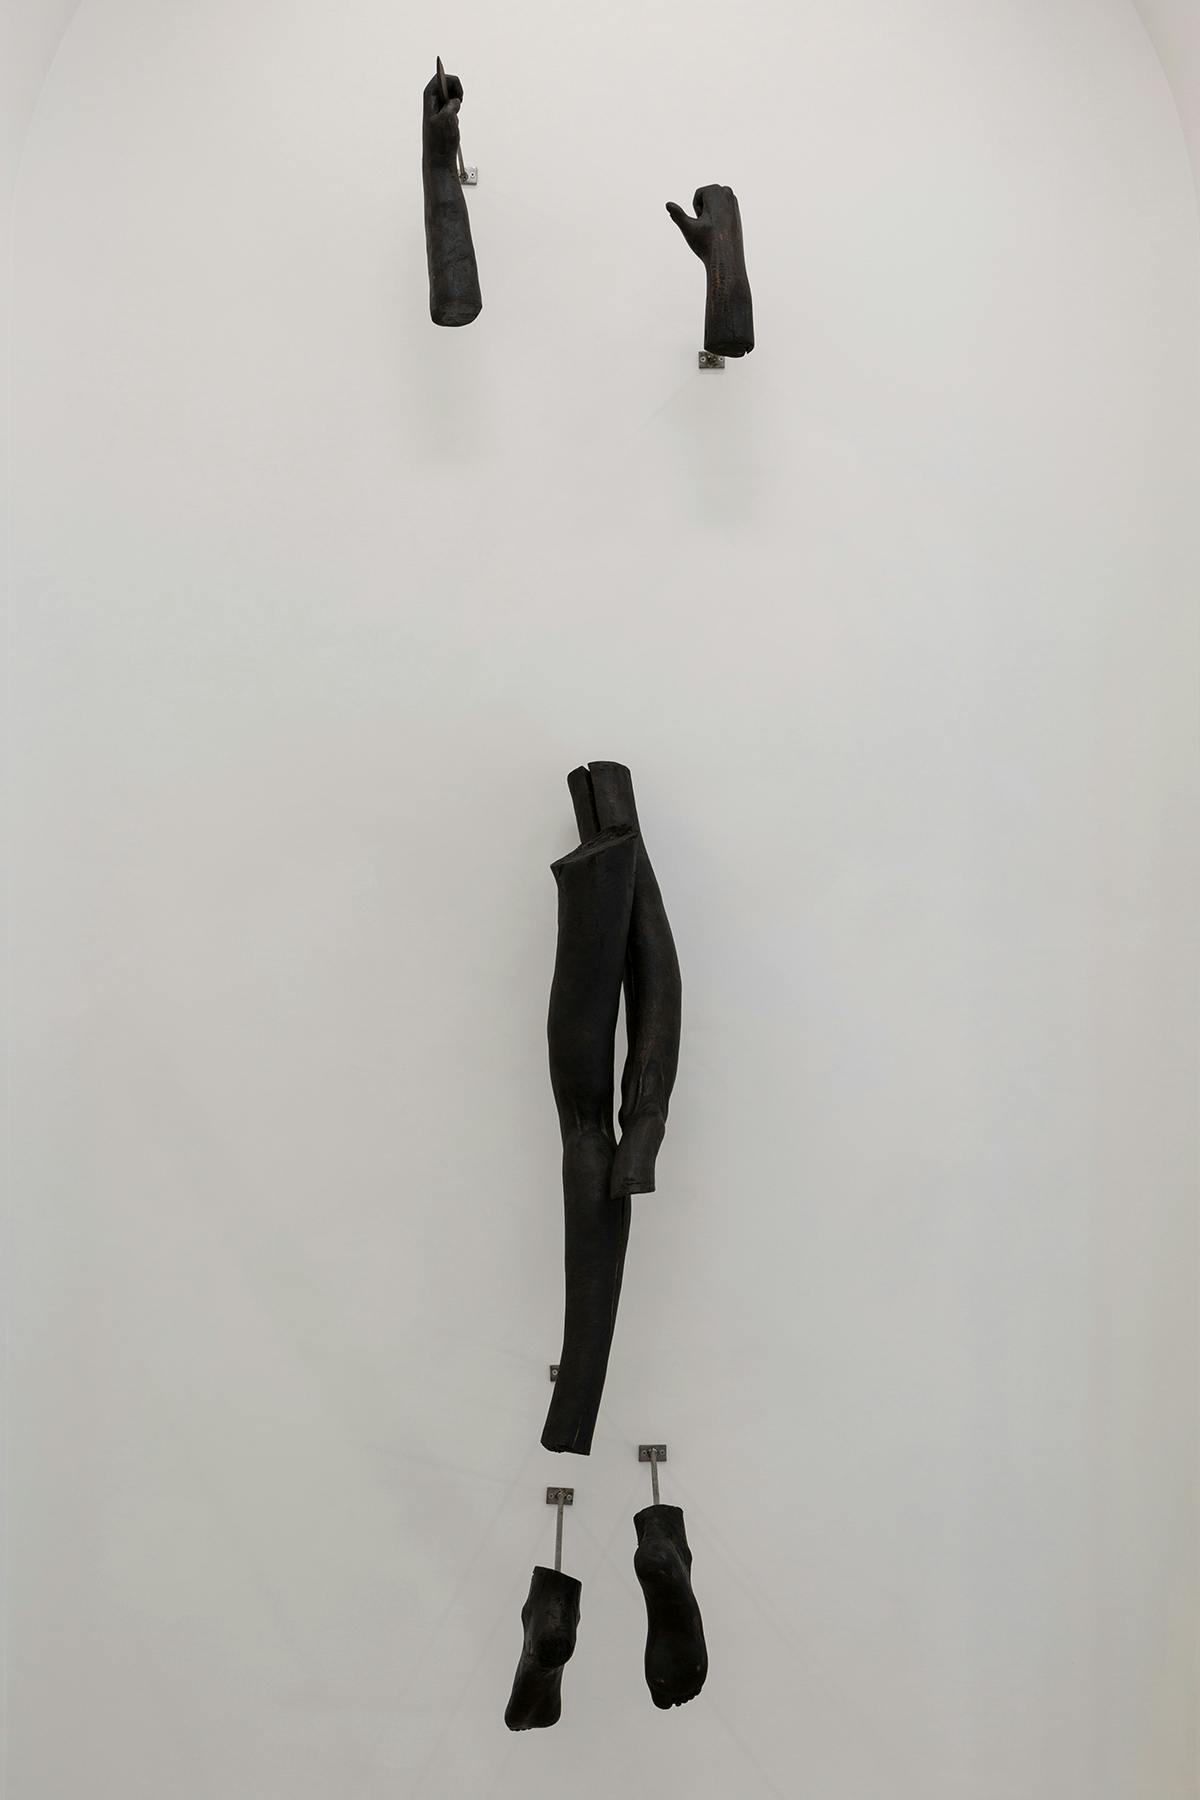 Corpo randagio (tentativo d’abbandono), Jacopo Naccarato, 2023, legno, ferro, inchiostro e cera, misure ambientali